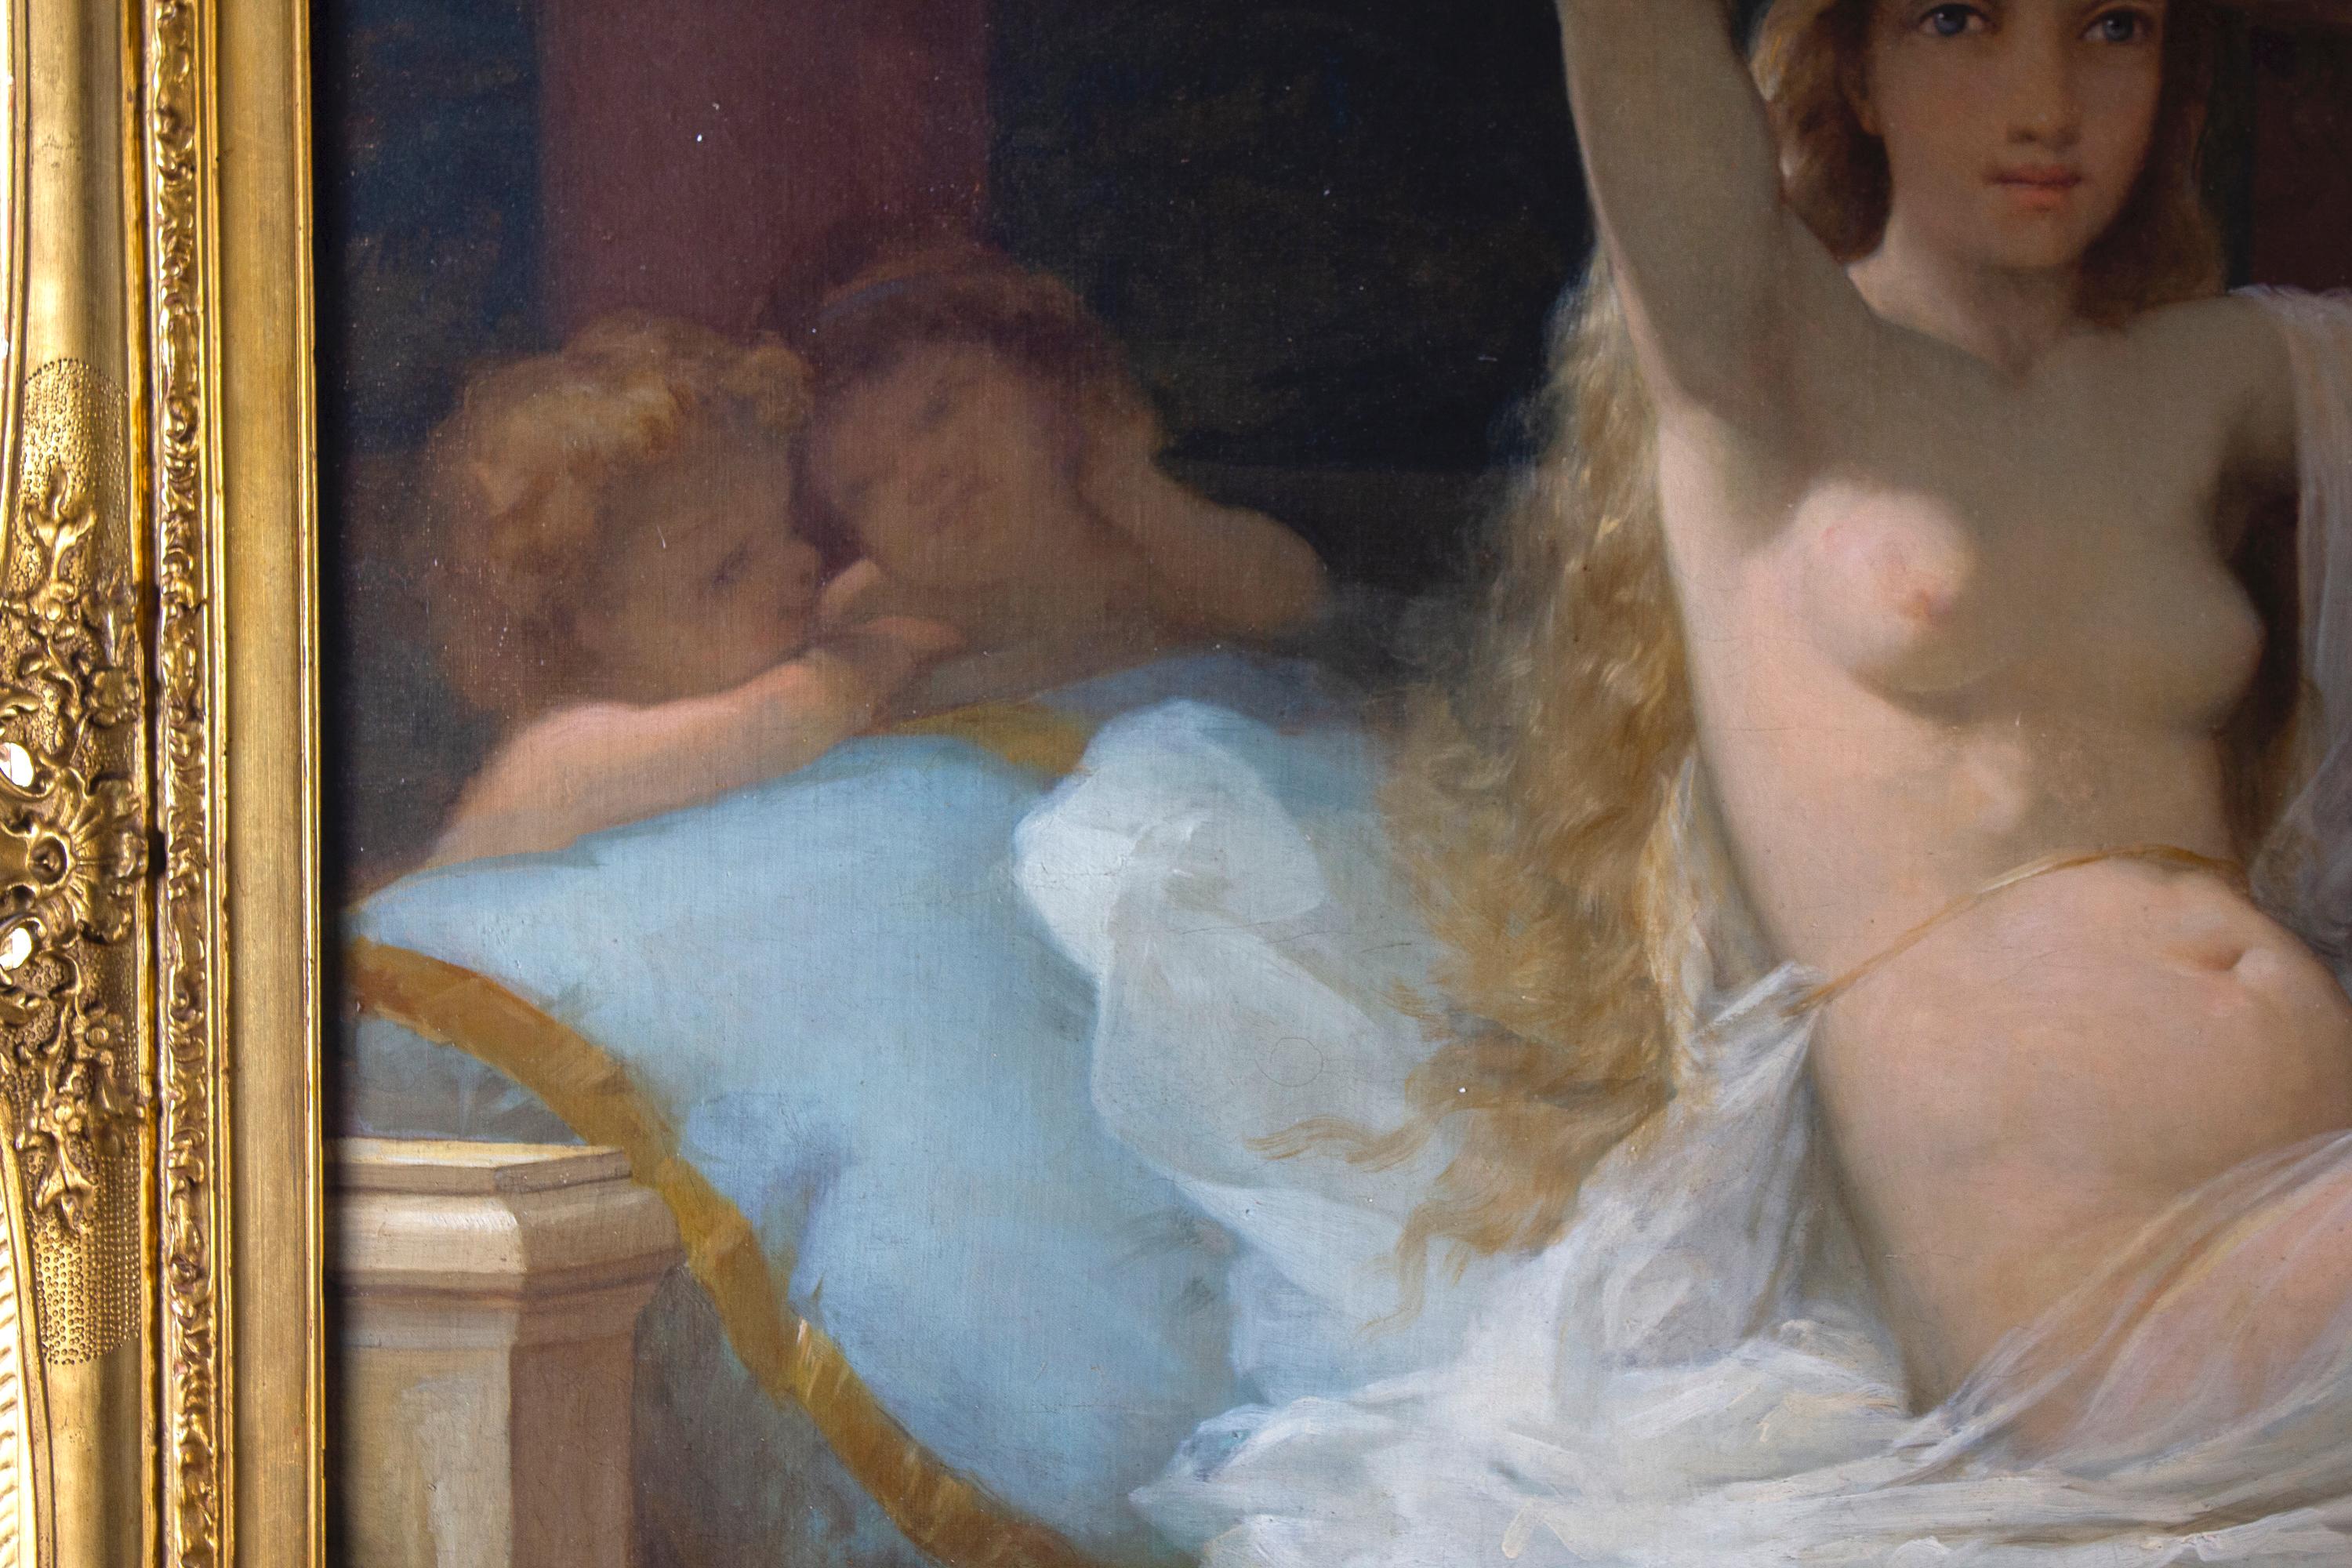 Französisch 19' Jahrhundert Gemälde Öl auf Leinwand . Junge Venus nackt  Figur umgeben von  köstlich spielende Putti .
 Fein geschnitzter und vergoldeter Holzrahmen aus der gleichen Zeit. 
 Maße ohne Rahmen cm 85 x 175 
 mit Rahmen cm 105 x 200